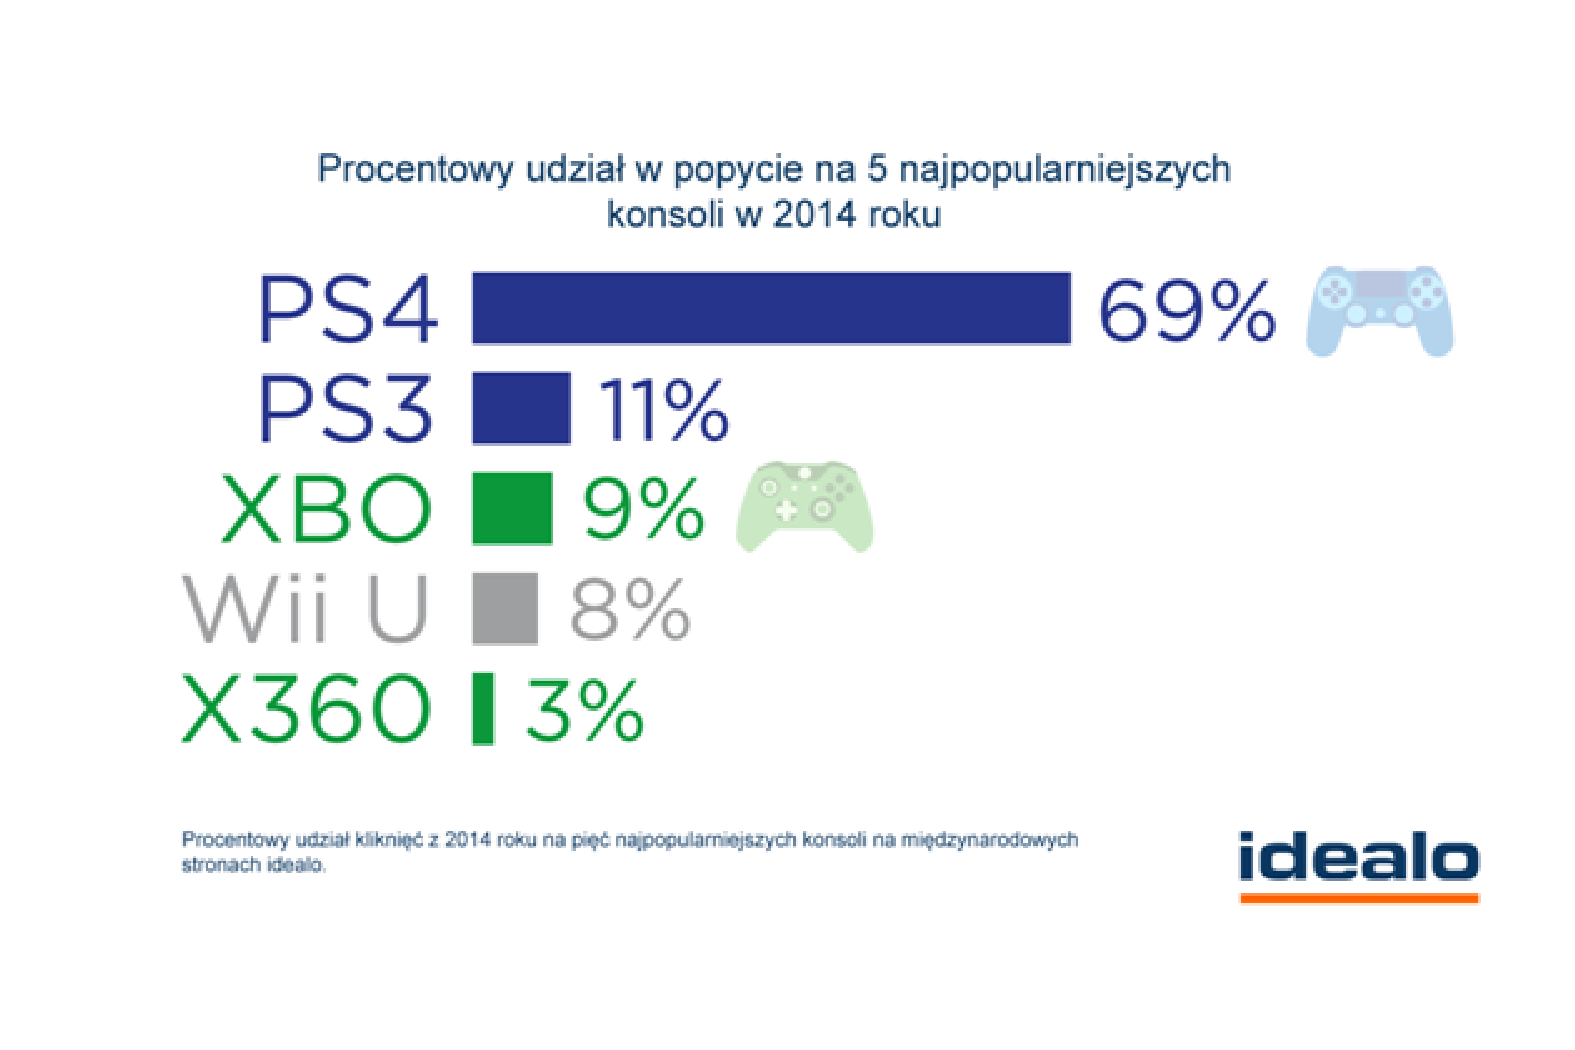 Konsole – Sony popularniejsze niż Microsoft